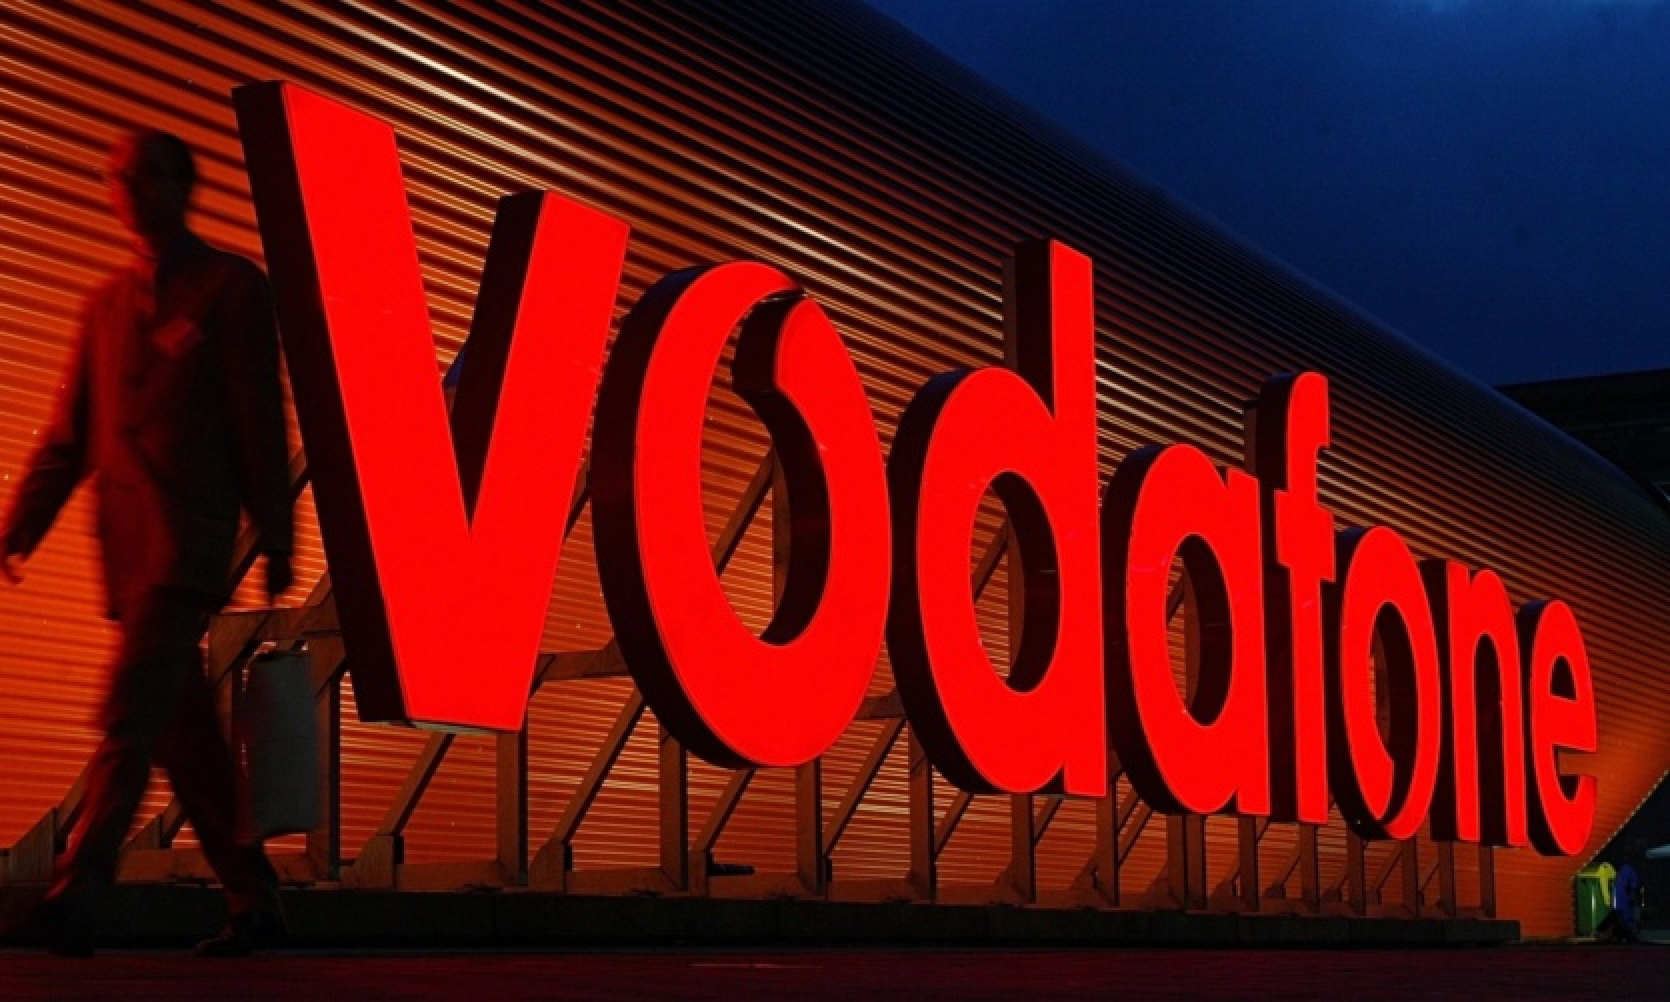 Vodafone Ukraina ir izstrādājusi savu mākslīgā intelekta versiju kontaktu centriem - palaišana plānota 15. maijā.